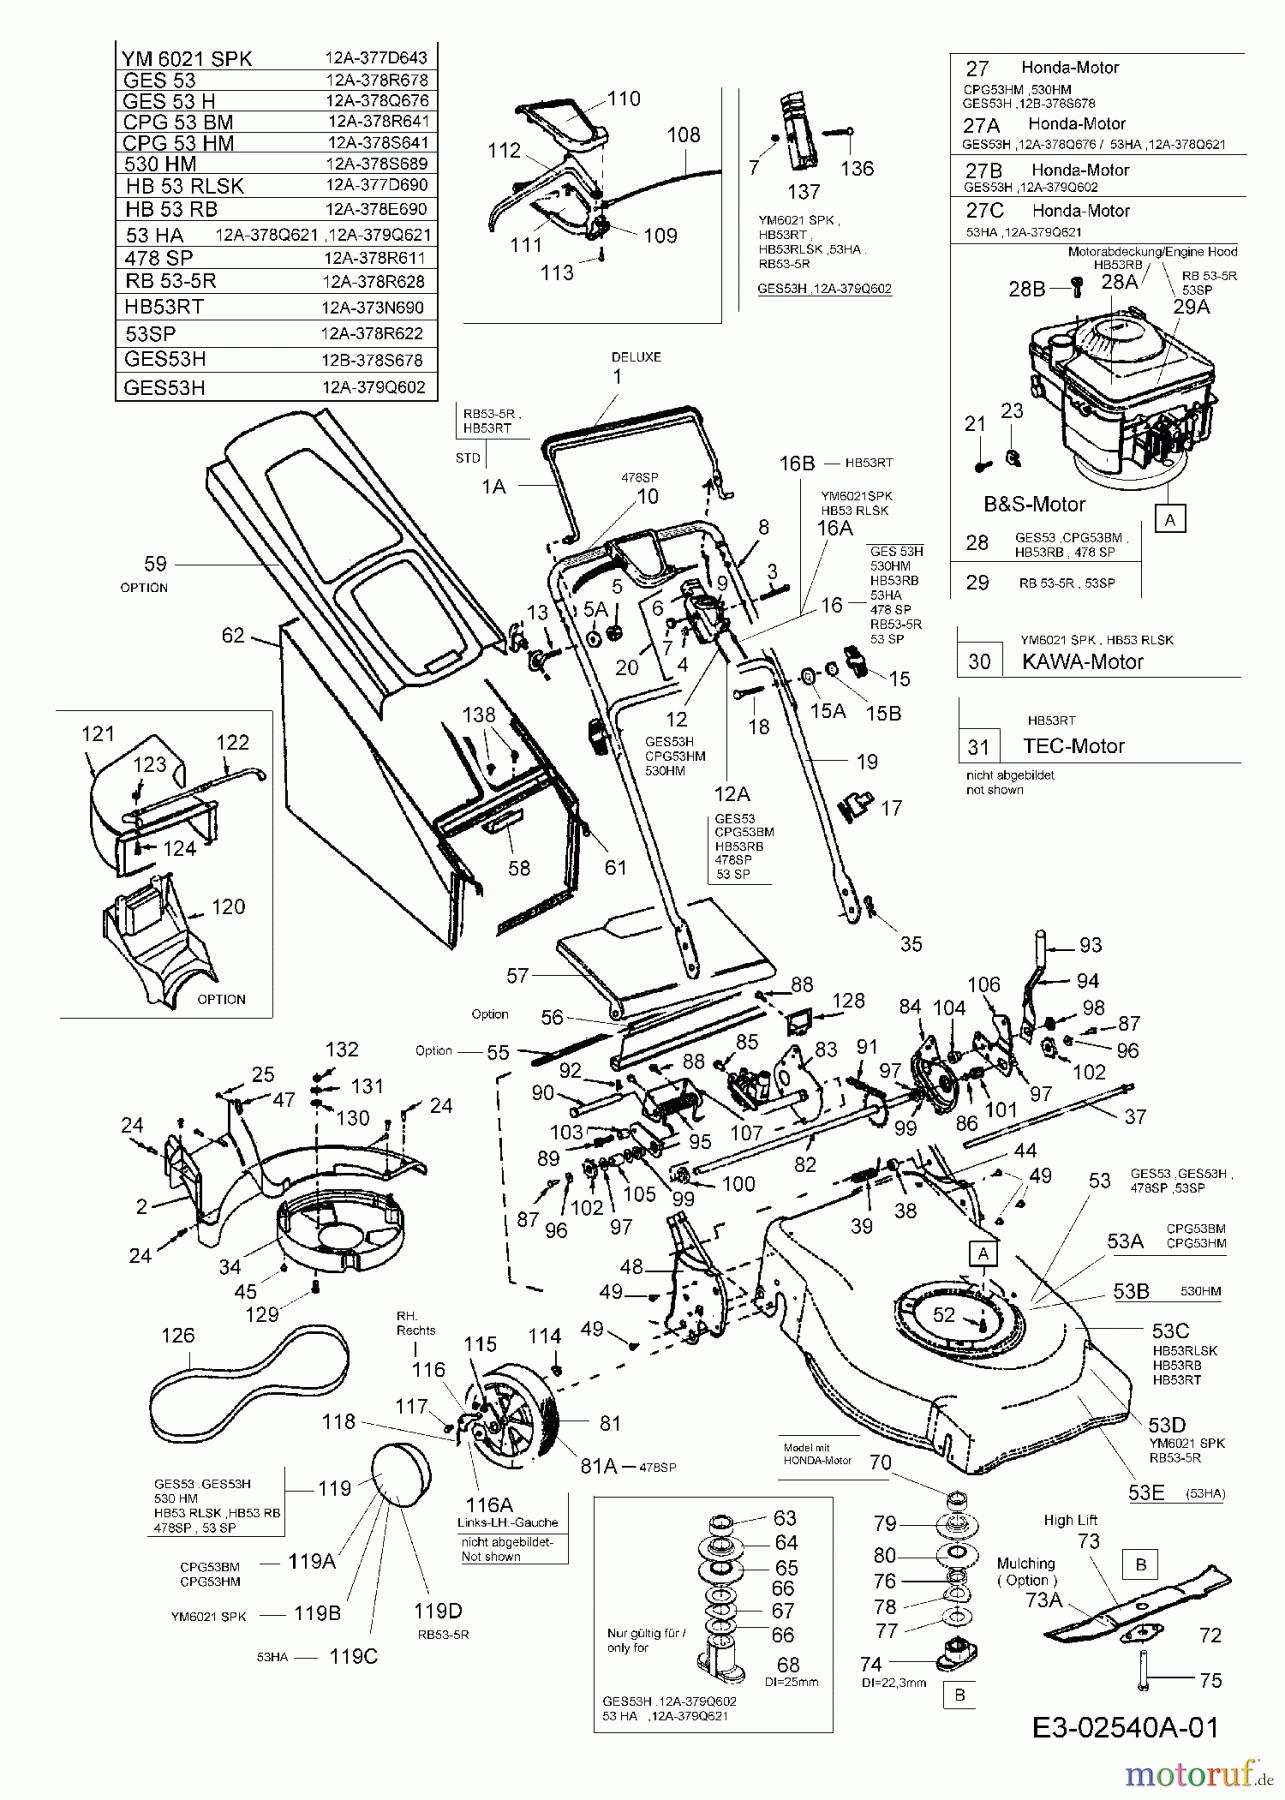  Raiffeisen Motormäher mit Antrieb RB 53-5 R 12A-378R628  (2005) Grundgerät